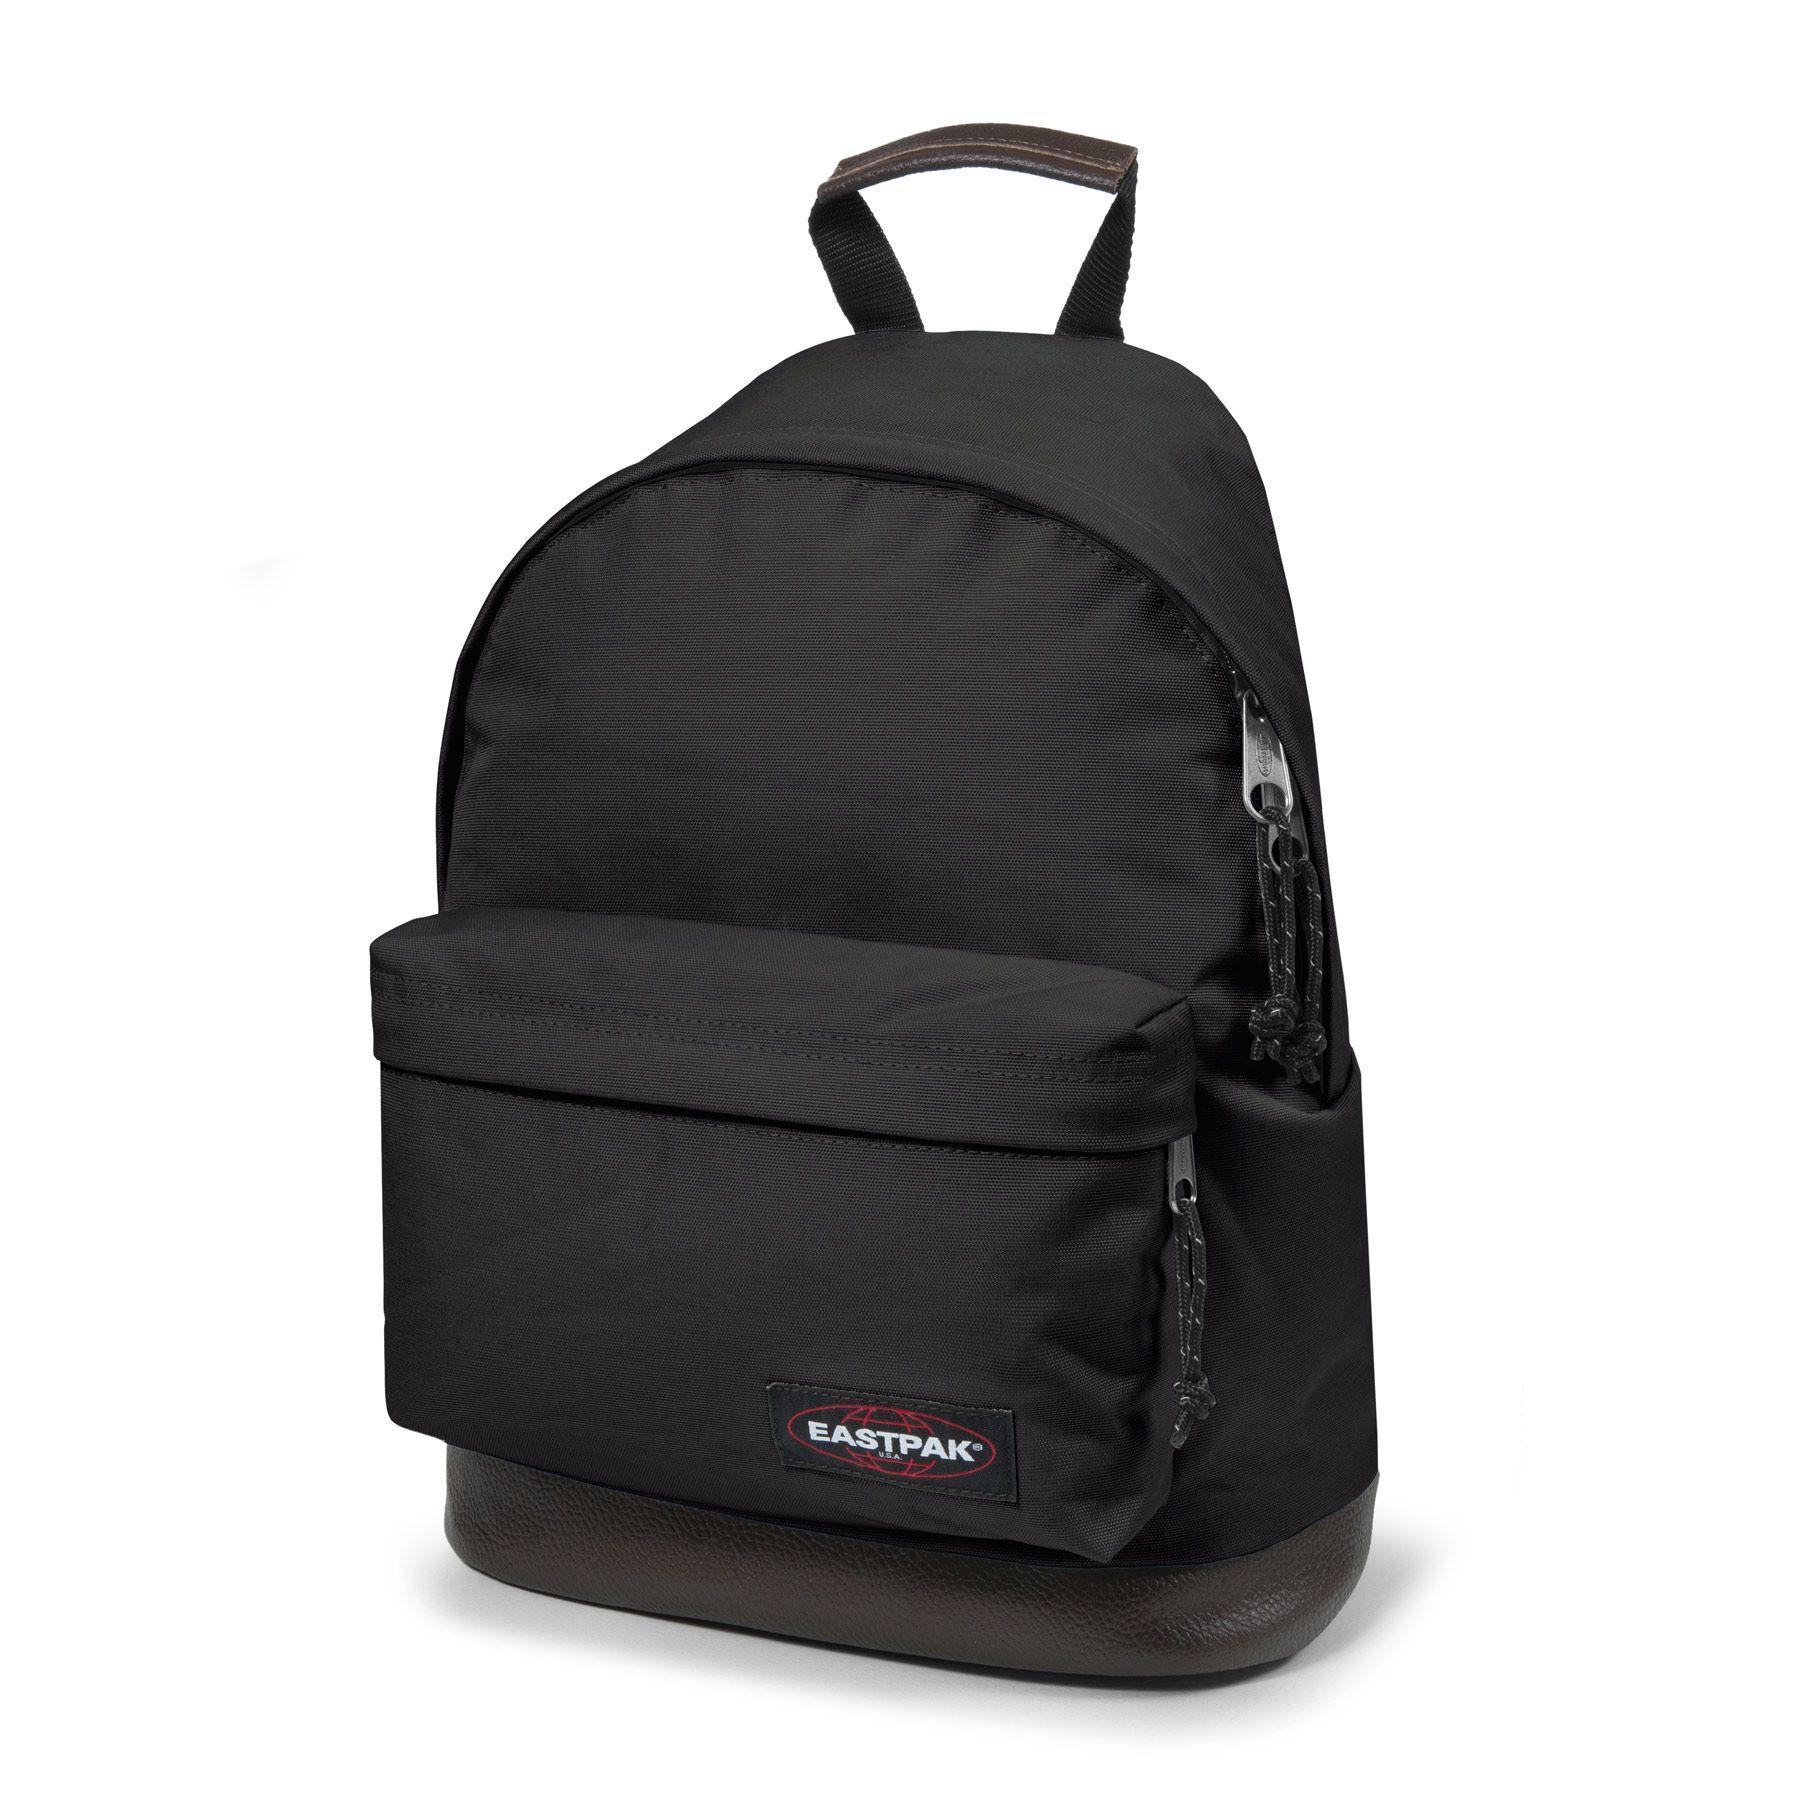 Staat zelfstandig naamwoord Tegenstrijdigheid Backpack Eastpak Wyoming - Backpacks - Bags - Equipment